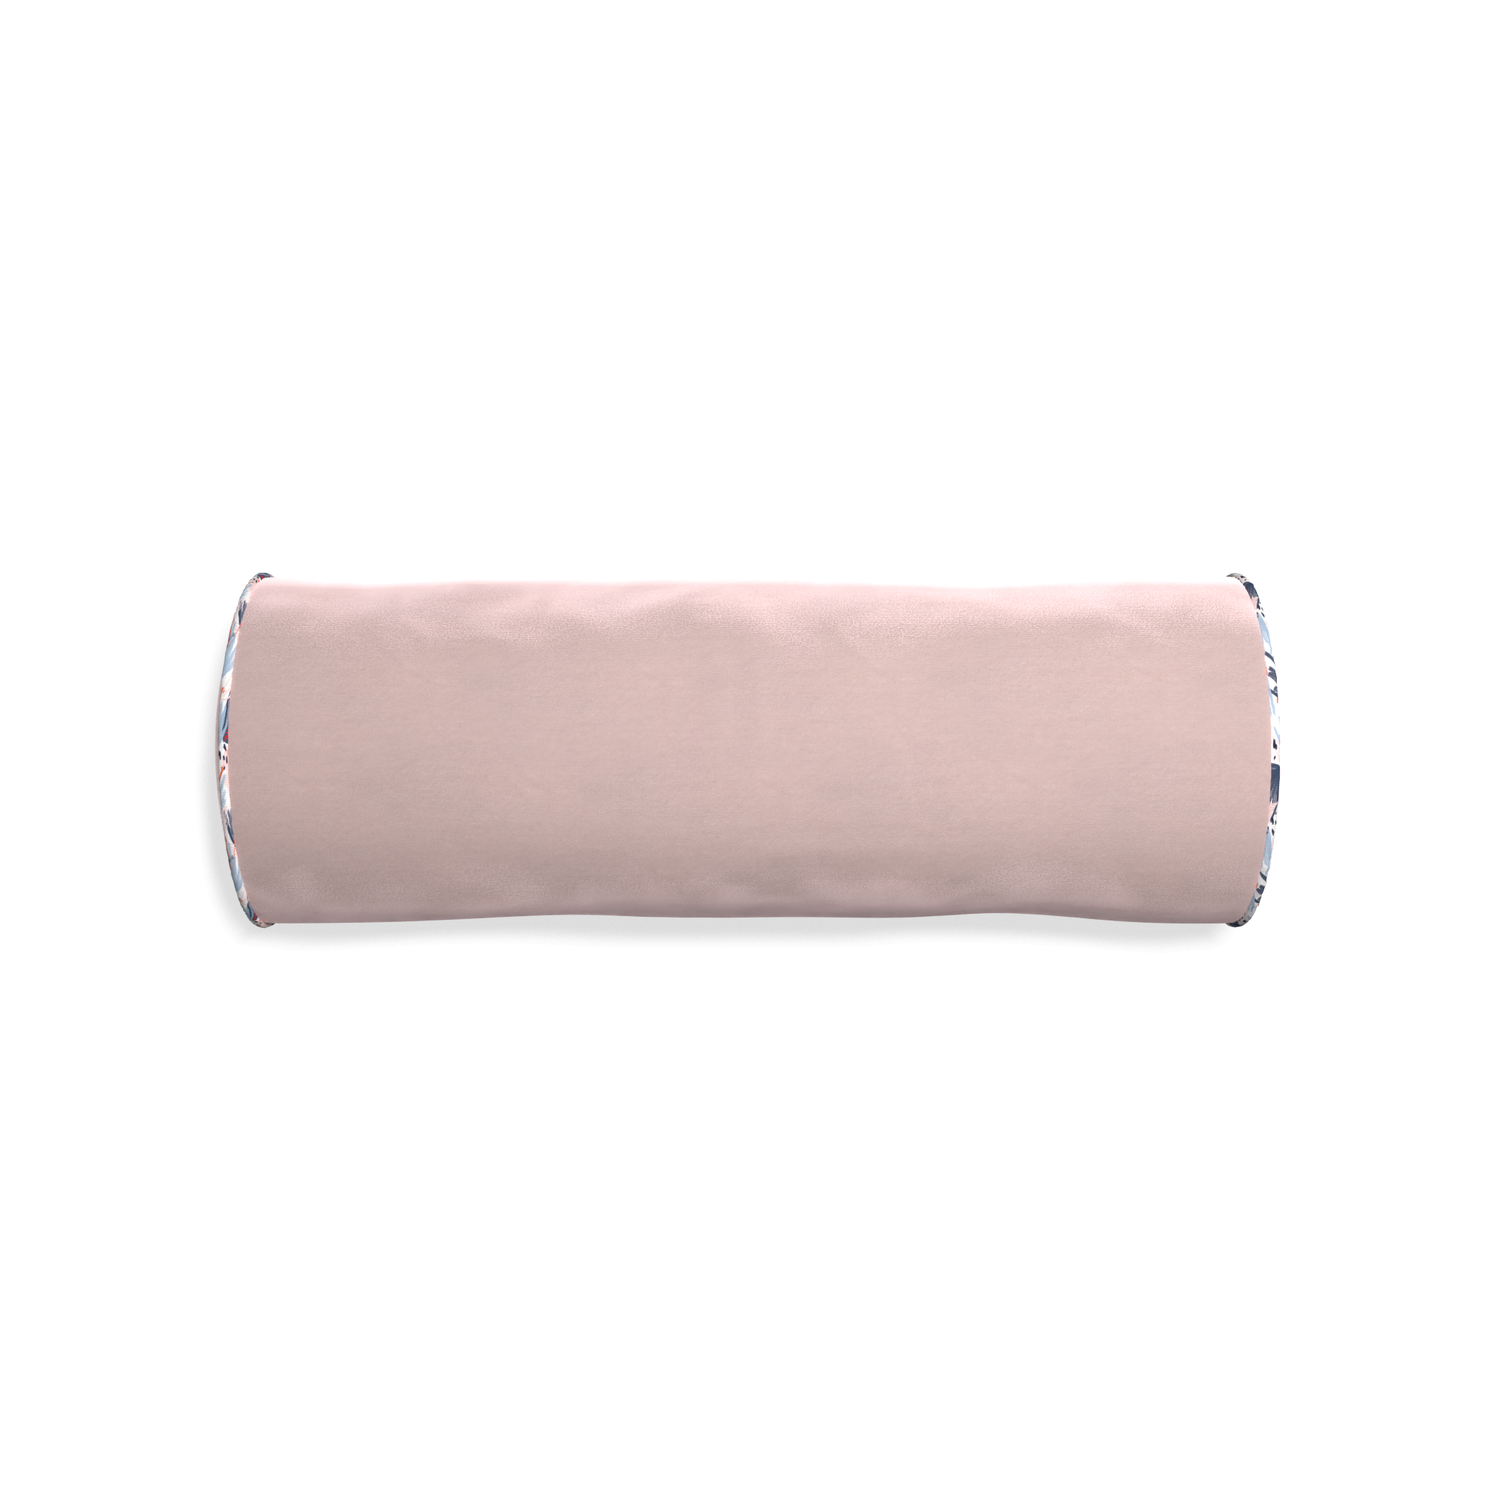 Bolster rose velvet custom pillow with e piping on white background